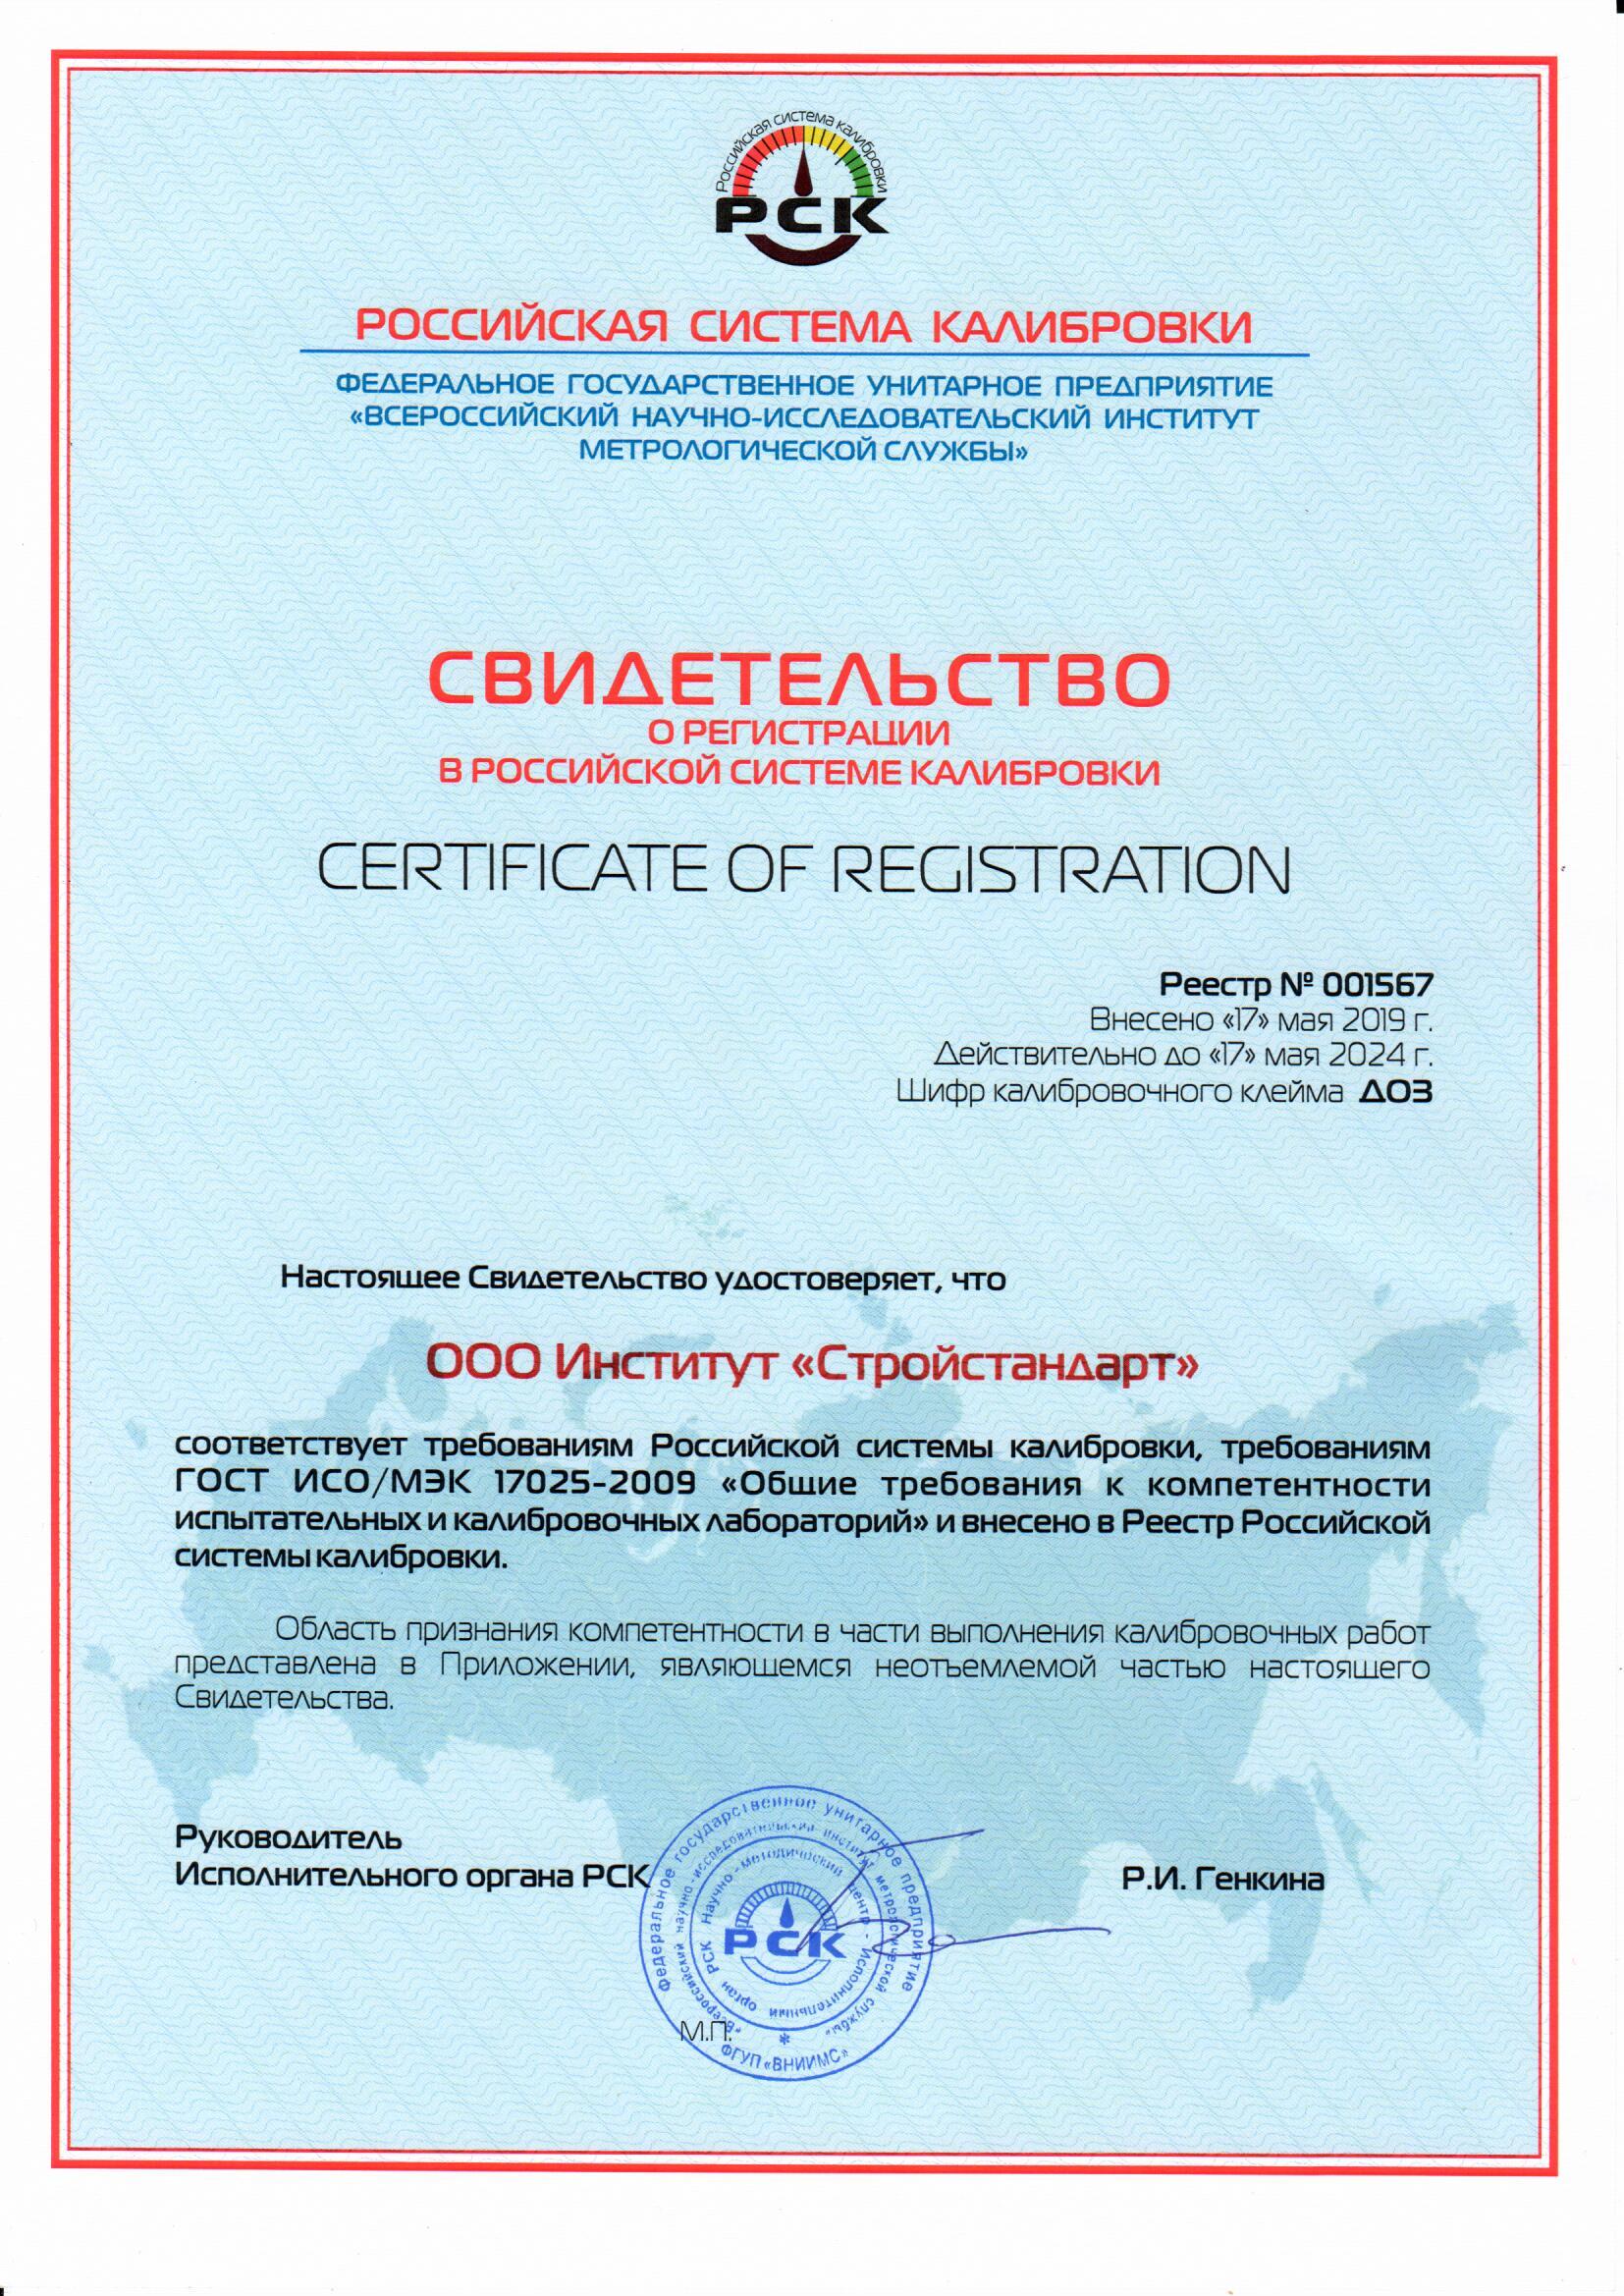 Свидетельство о регистрации в Российской системе калибровки №001567